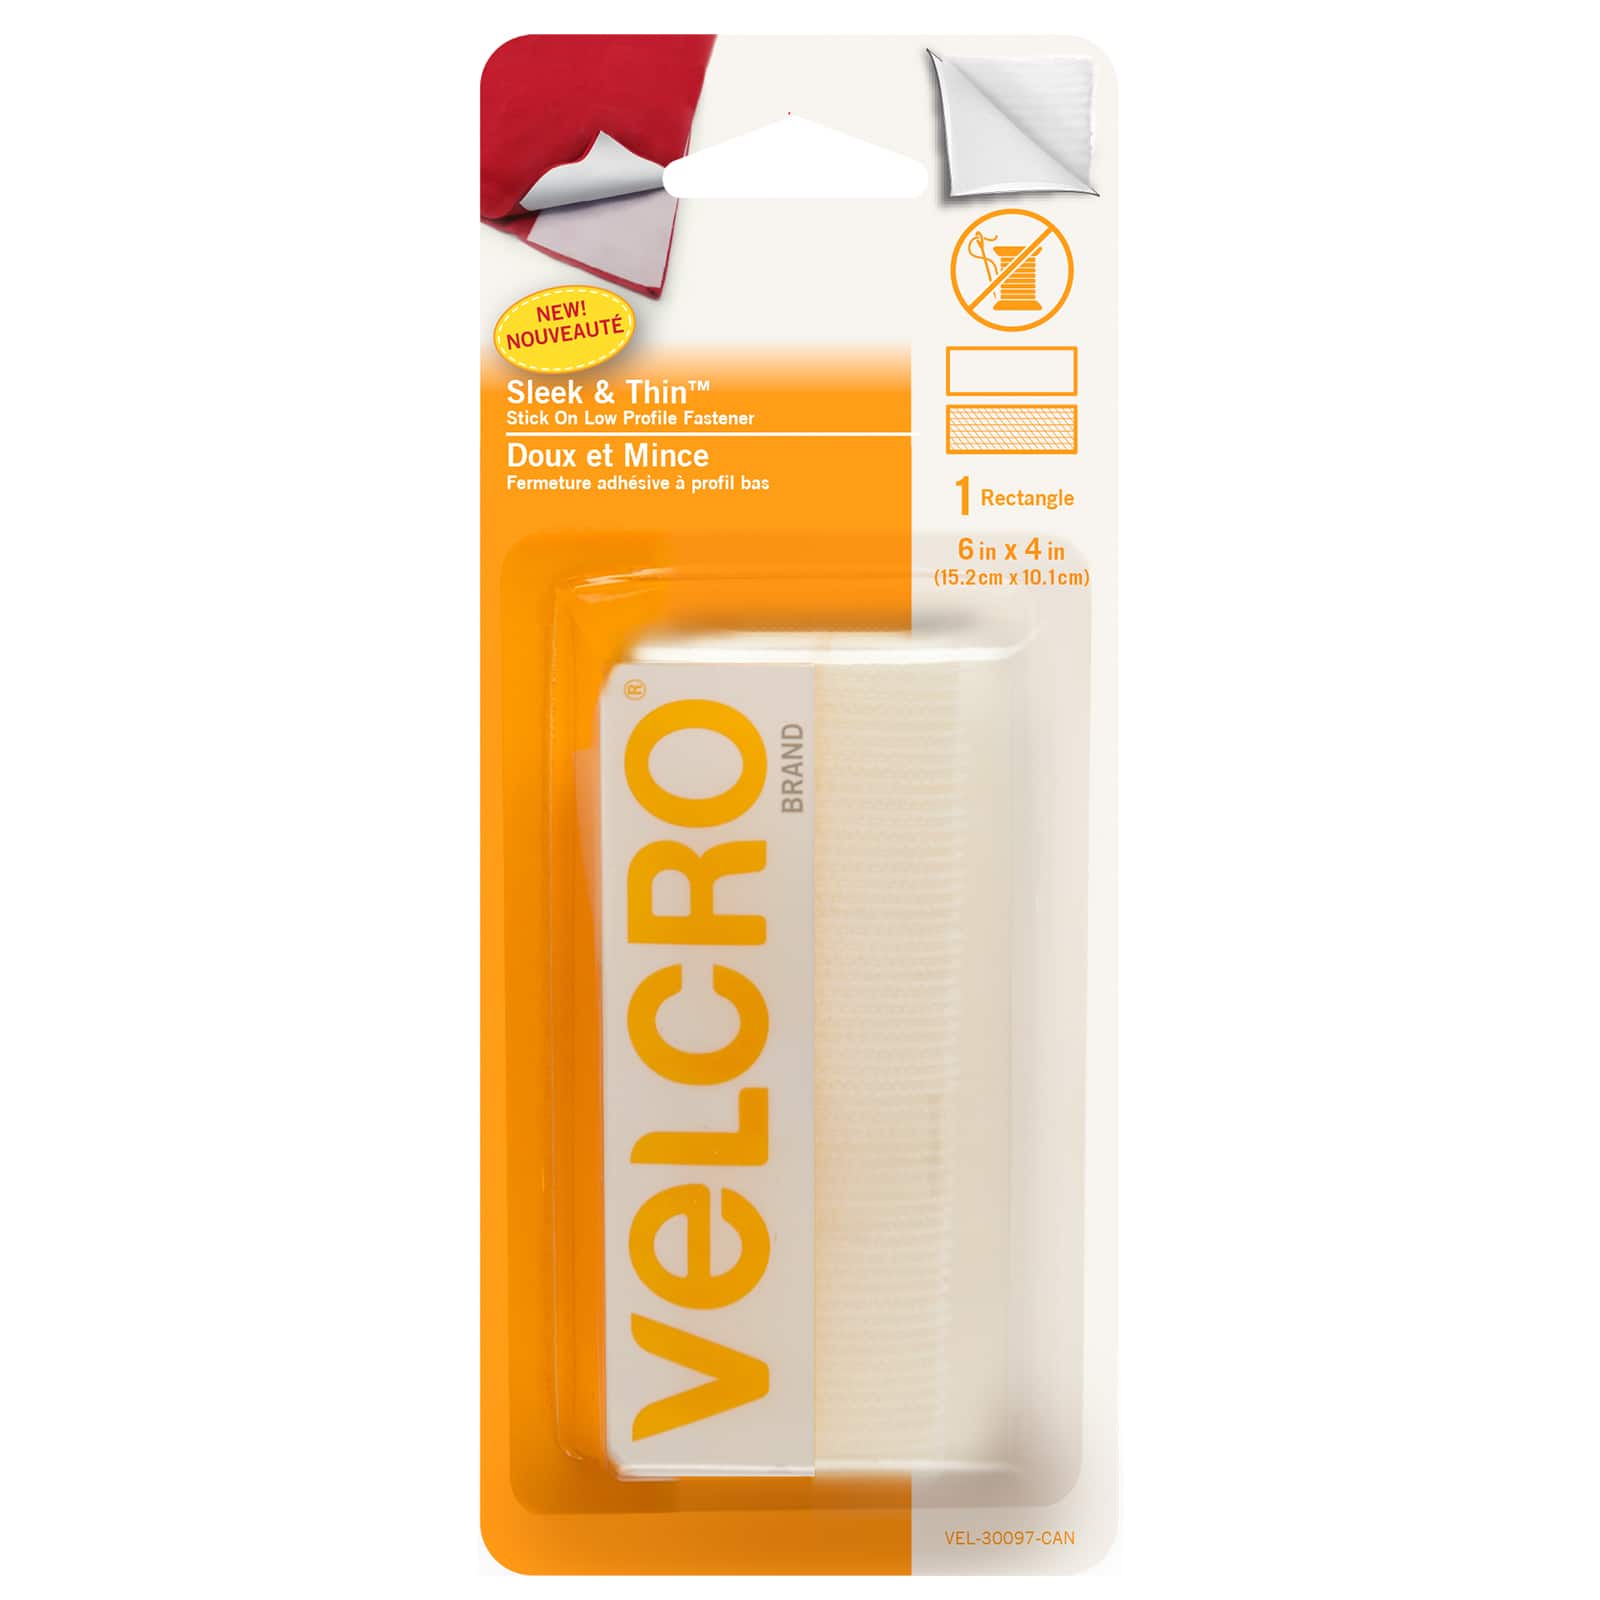 12 Pack: VELCRO Brand Sleek & Thin™ Stick On White Fastener Roll